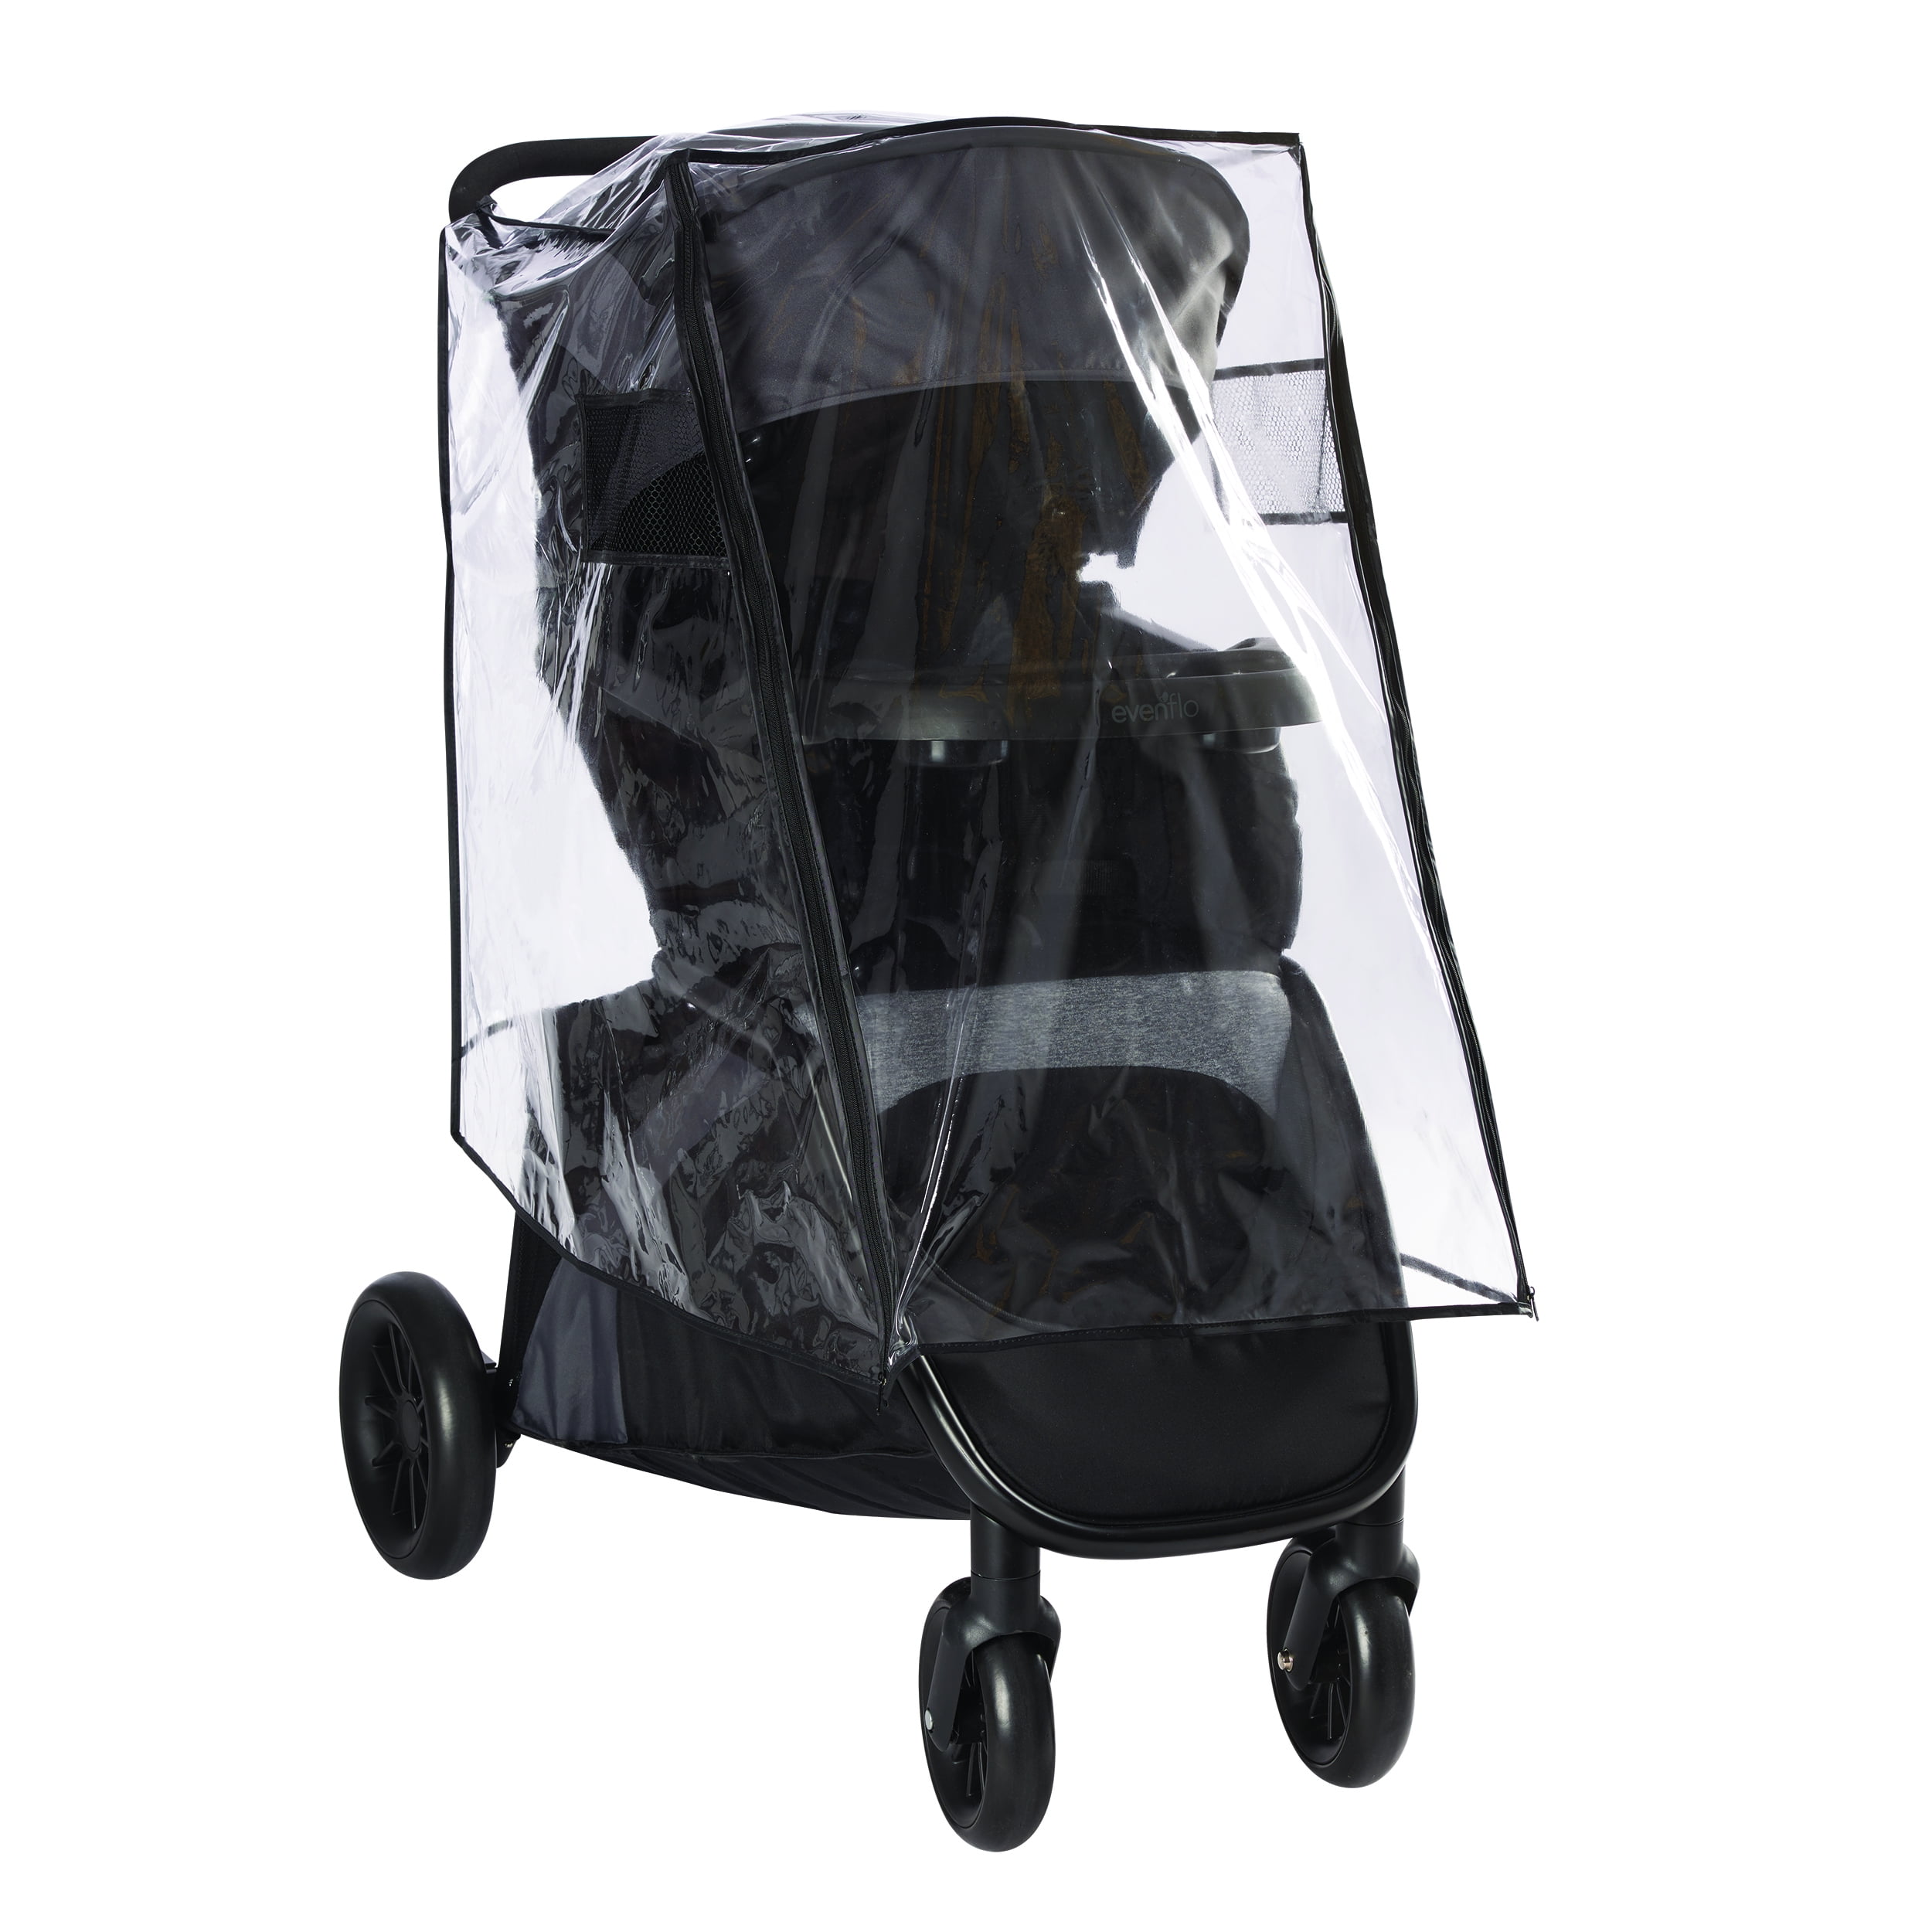 rain cover for stroller walmart